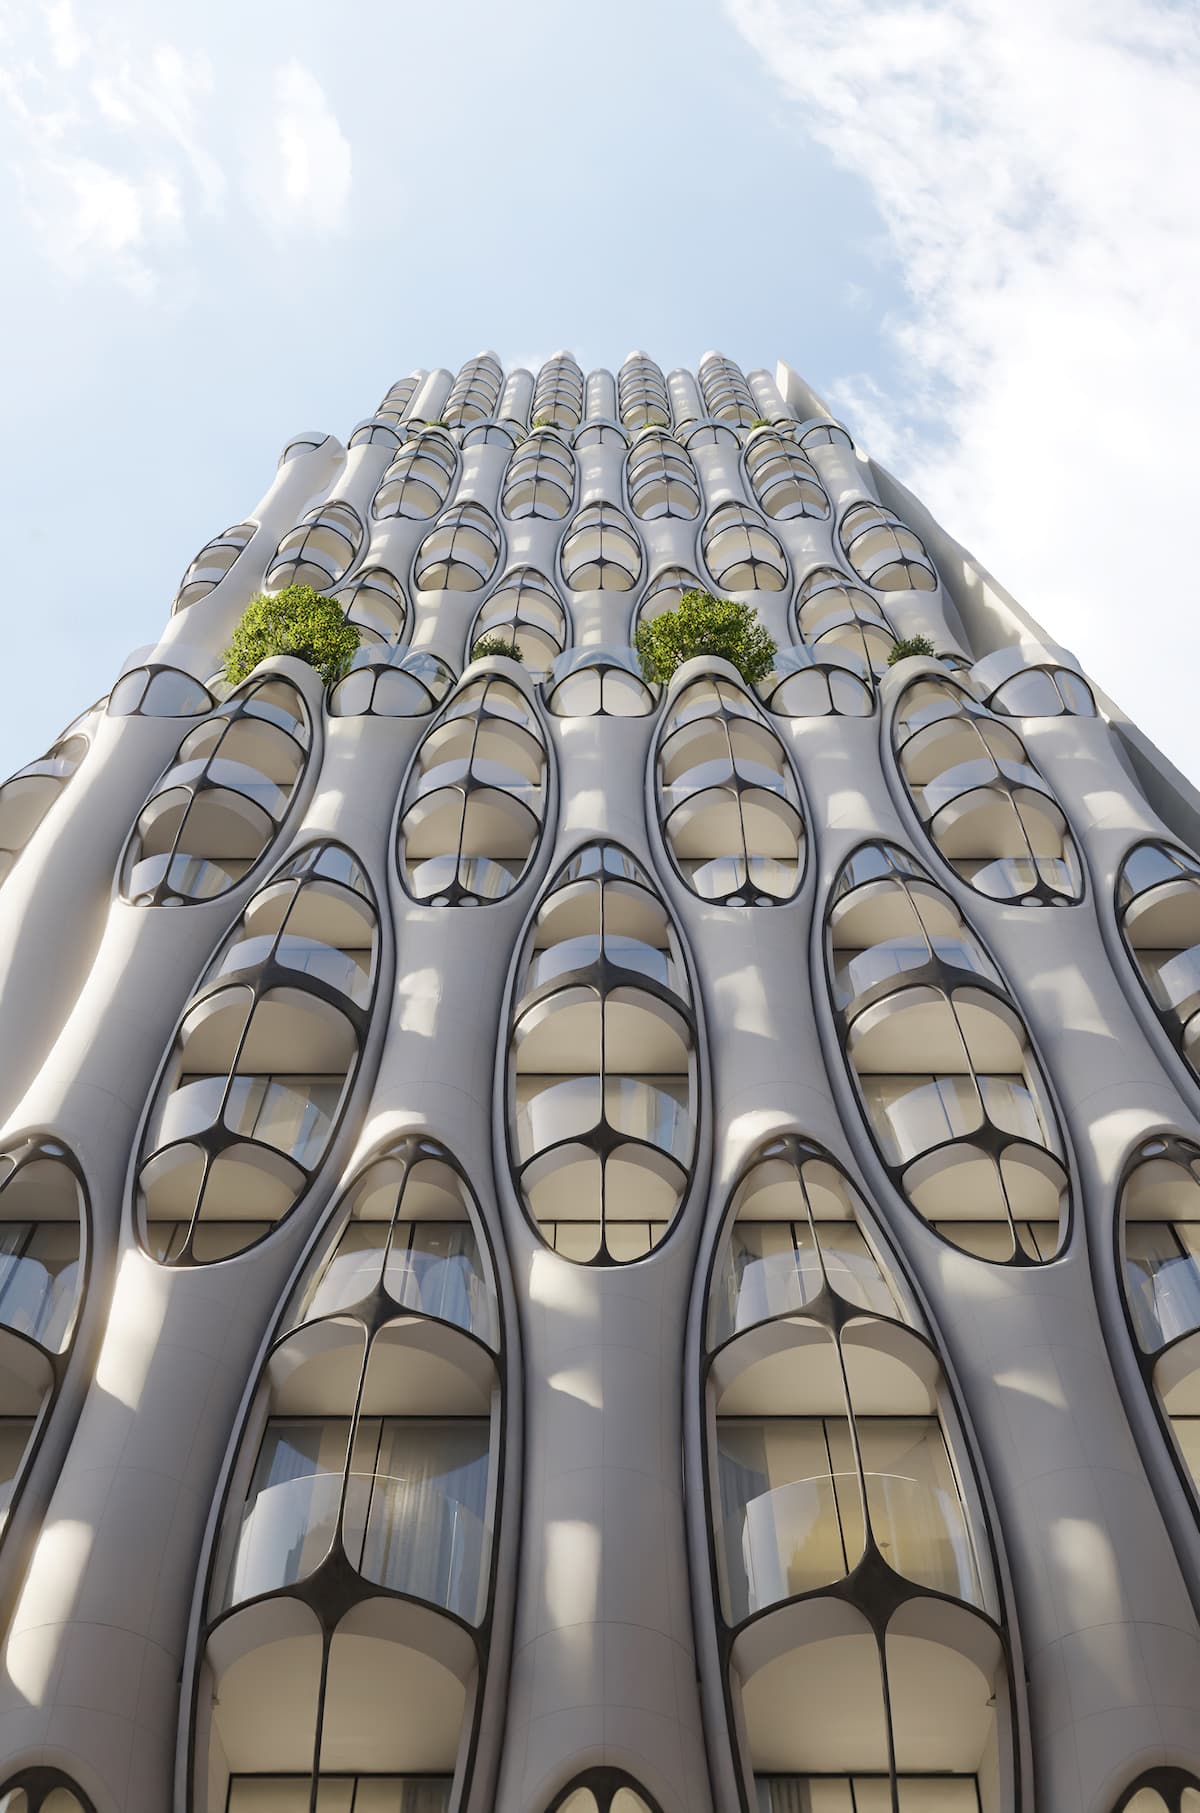 Dreamy High Rise: O ουρανοξύστης στο Τορόντο που μοιάζει να εναρμονίζεται με τα σύννεφα